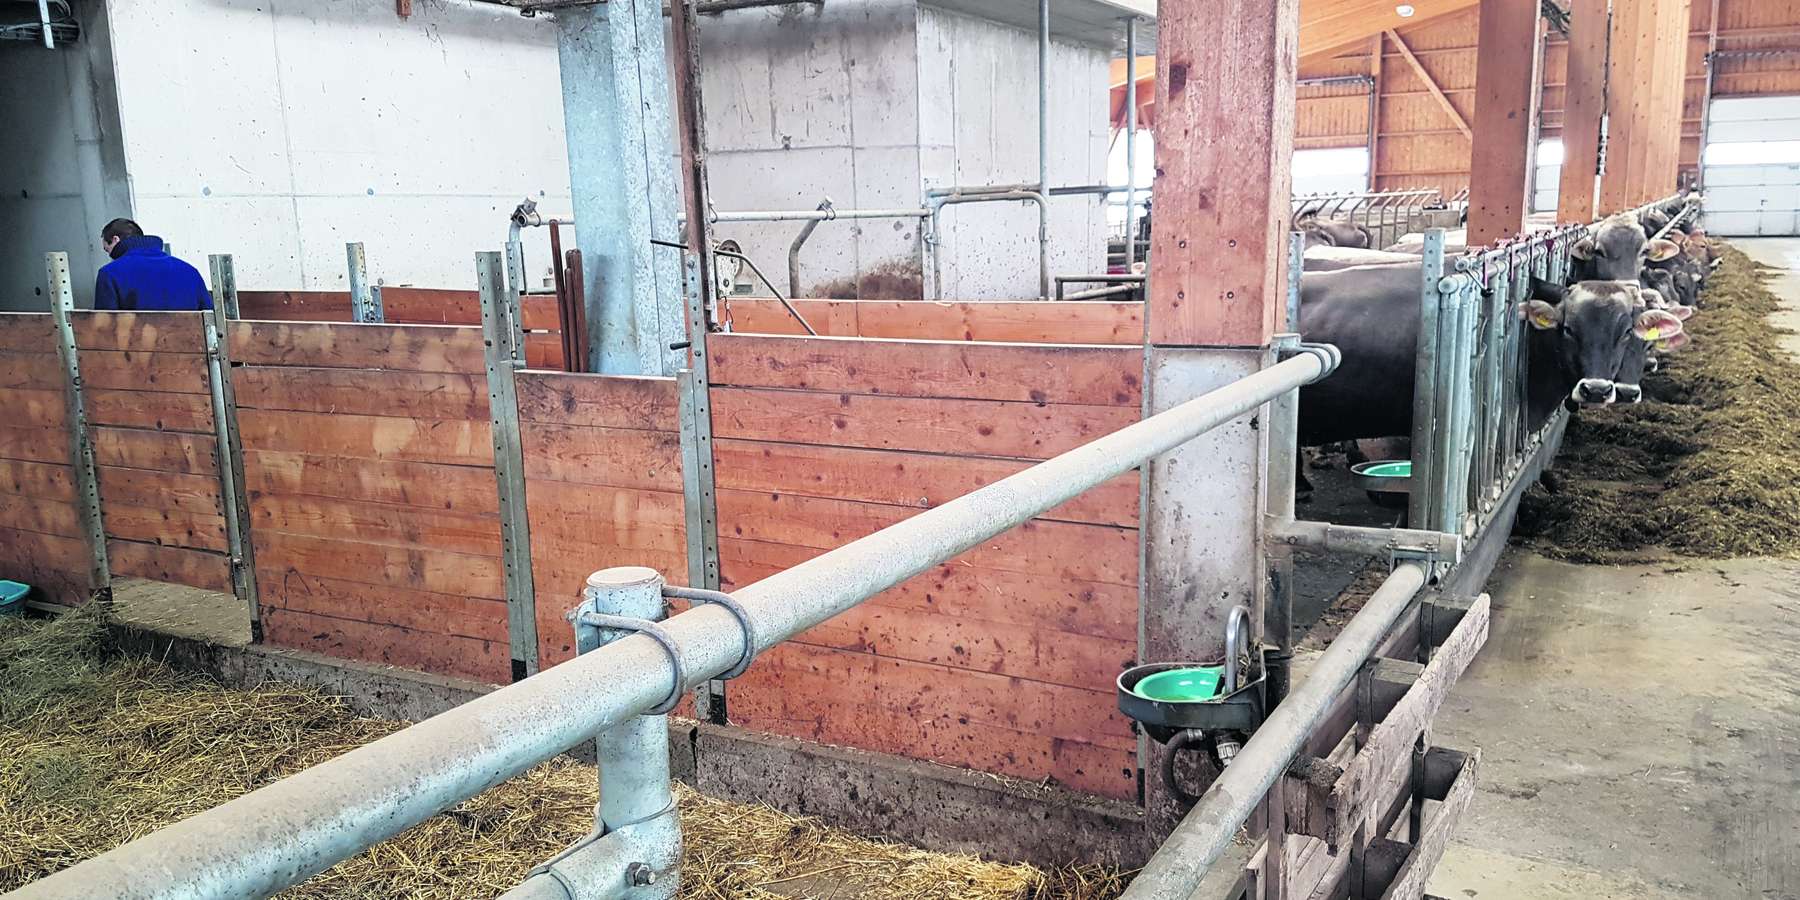 Rund um die Abkalbung brauchen Kühe viel Wasser. Ein Selbsttränker in der Abkalbebox ist zu wenig. © Horn/LK Niederösterreich